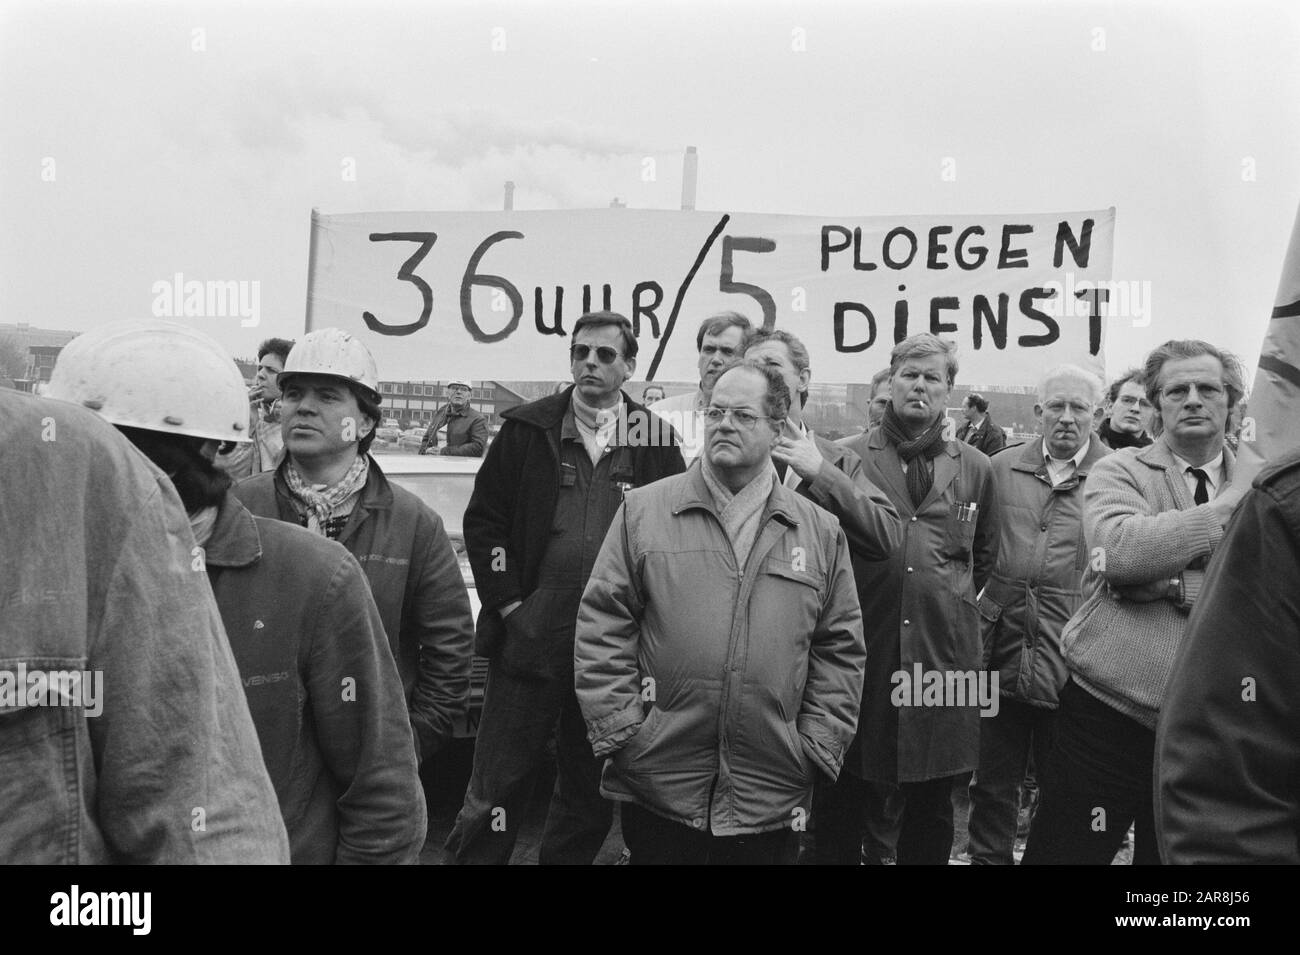 Grève à Royal Hoogovens pour protester contre l'impasse des grèves de consultation de CAO, bannières, slogans Date: 7 février 1989 lieu: IJmuiden, Noord-Holland mots clés: Slogans, bannières, grèves Banque D'Images